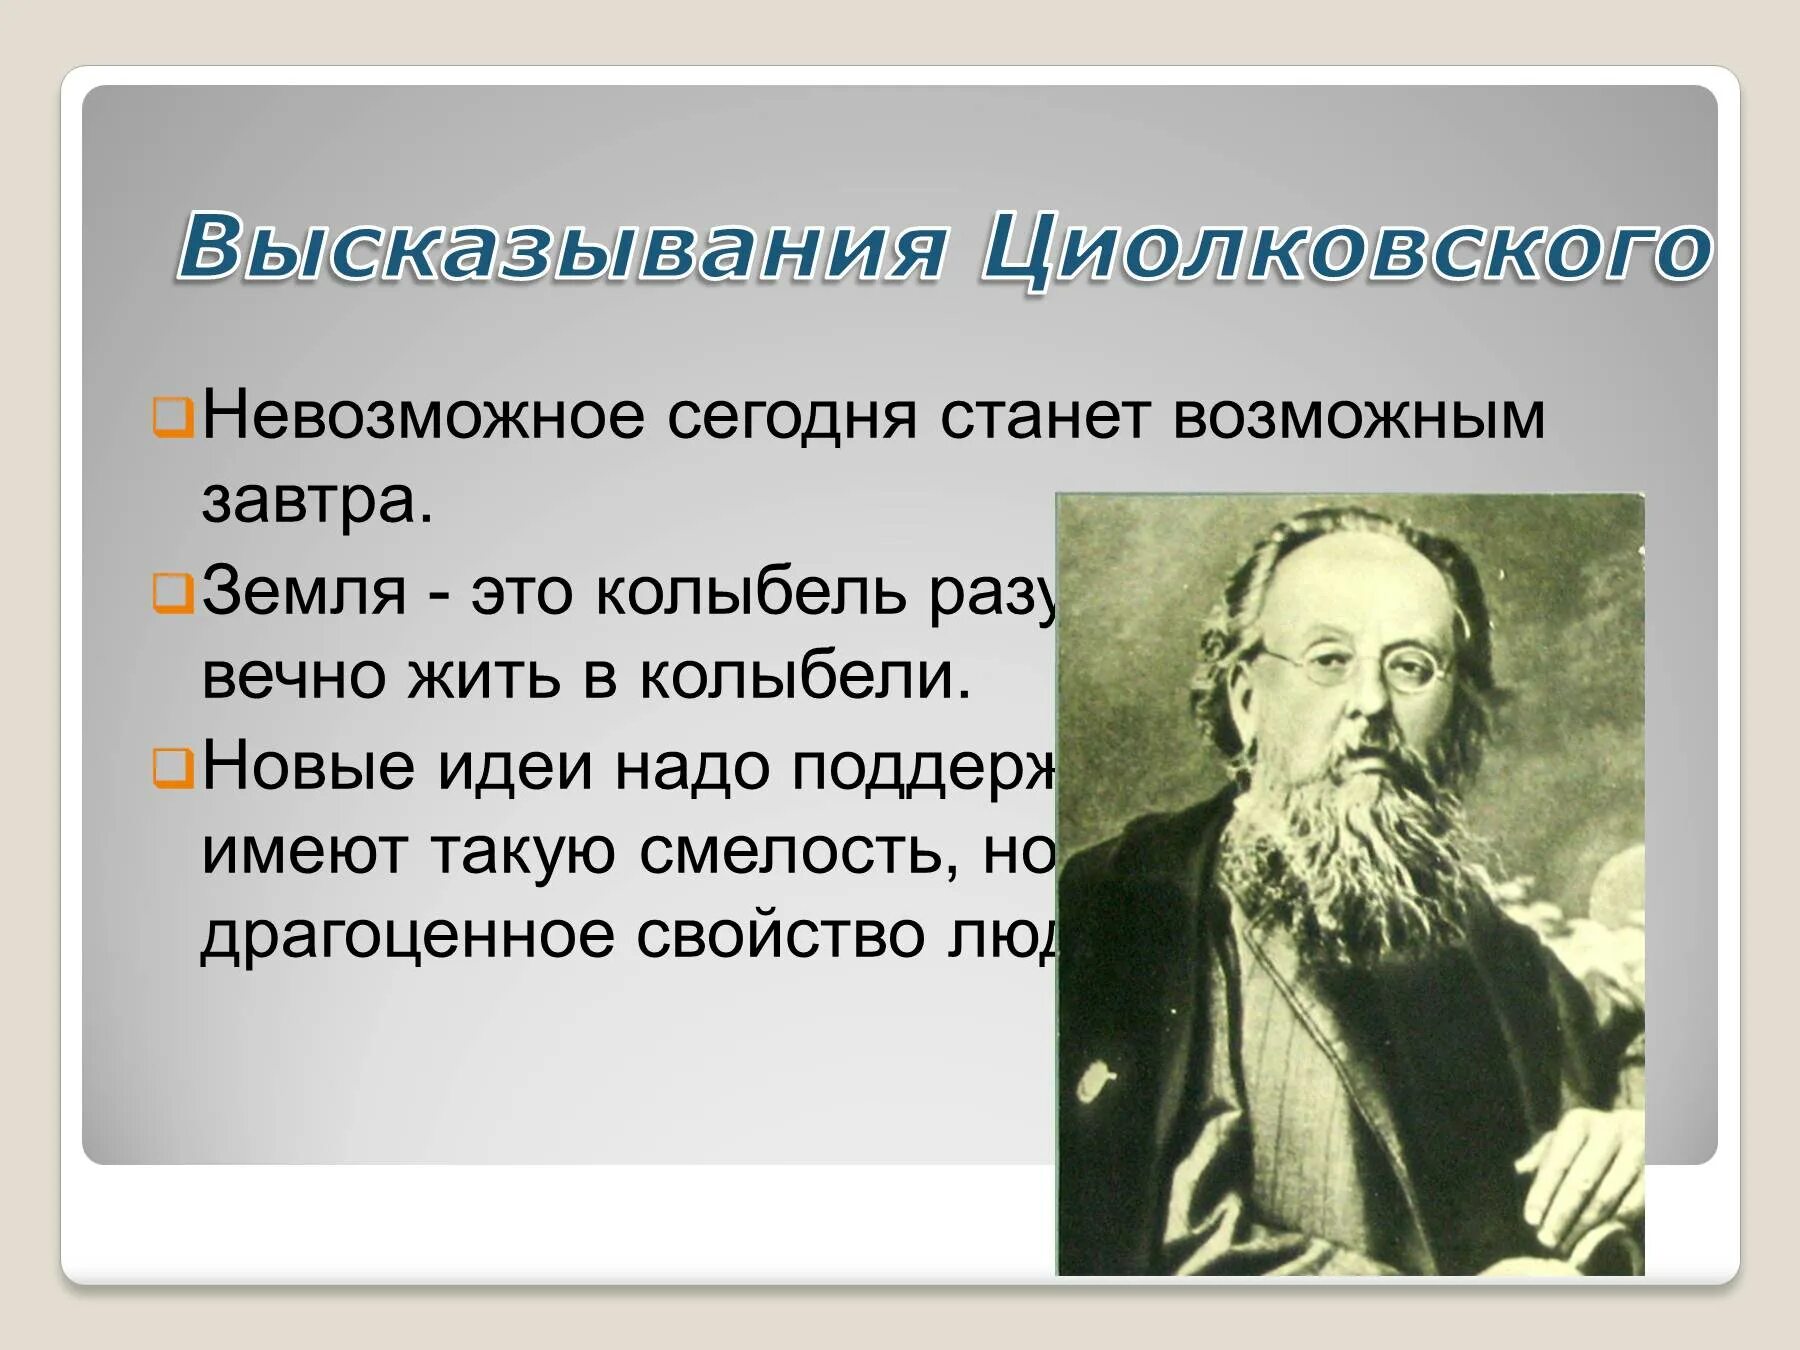 Имя циолковского сейчас известно каждому. Циолковский цитаты. Высказывания Циолковского о космосе.